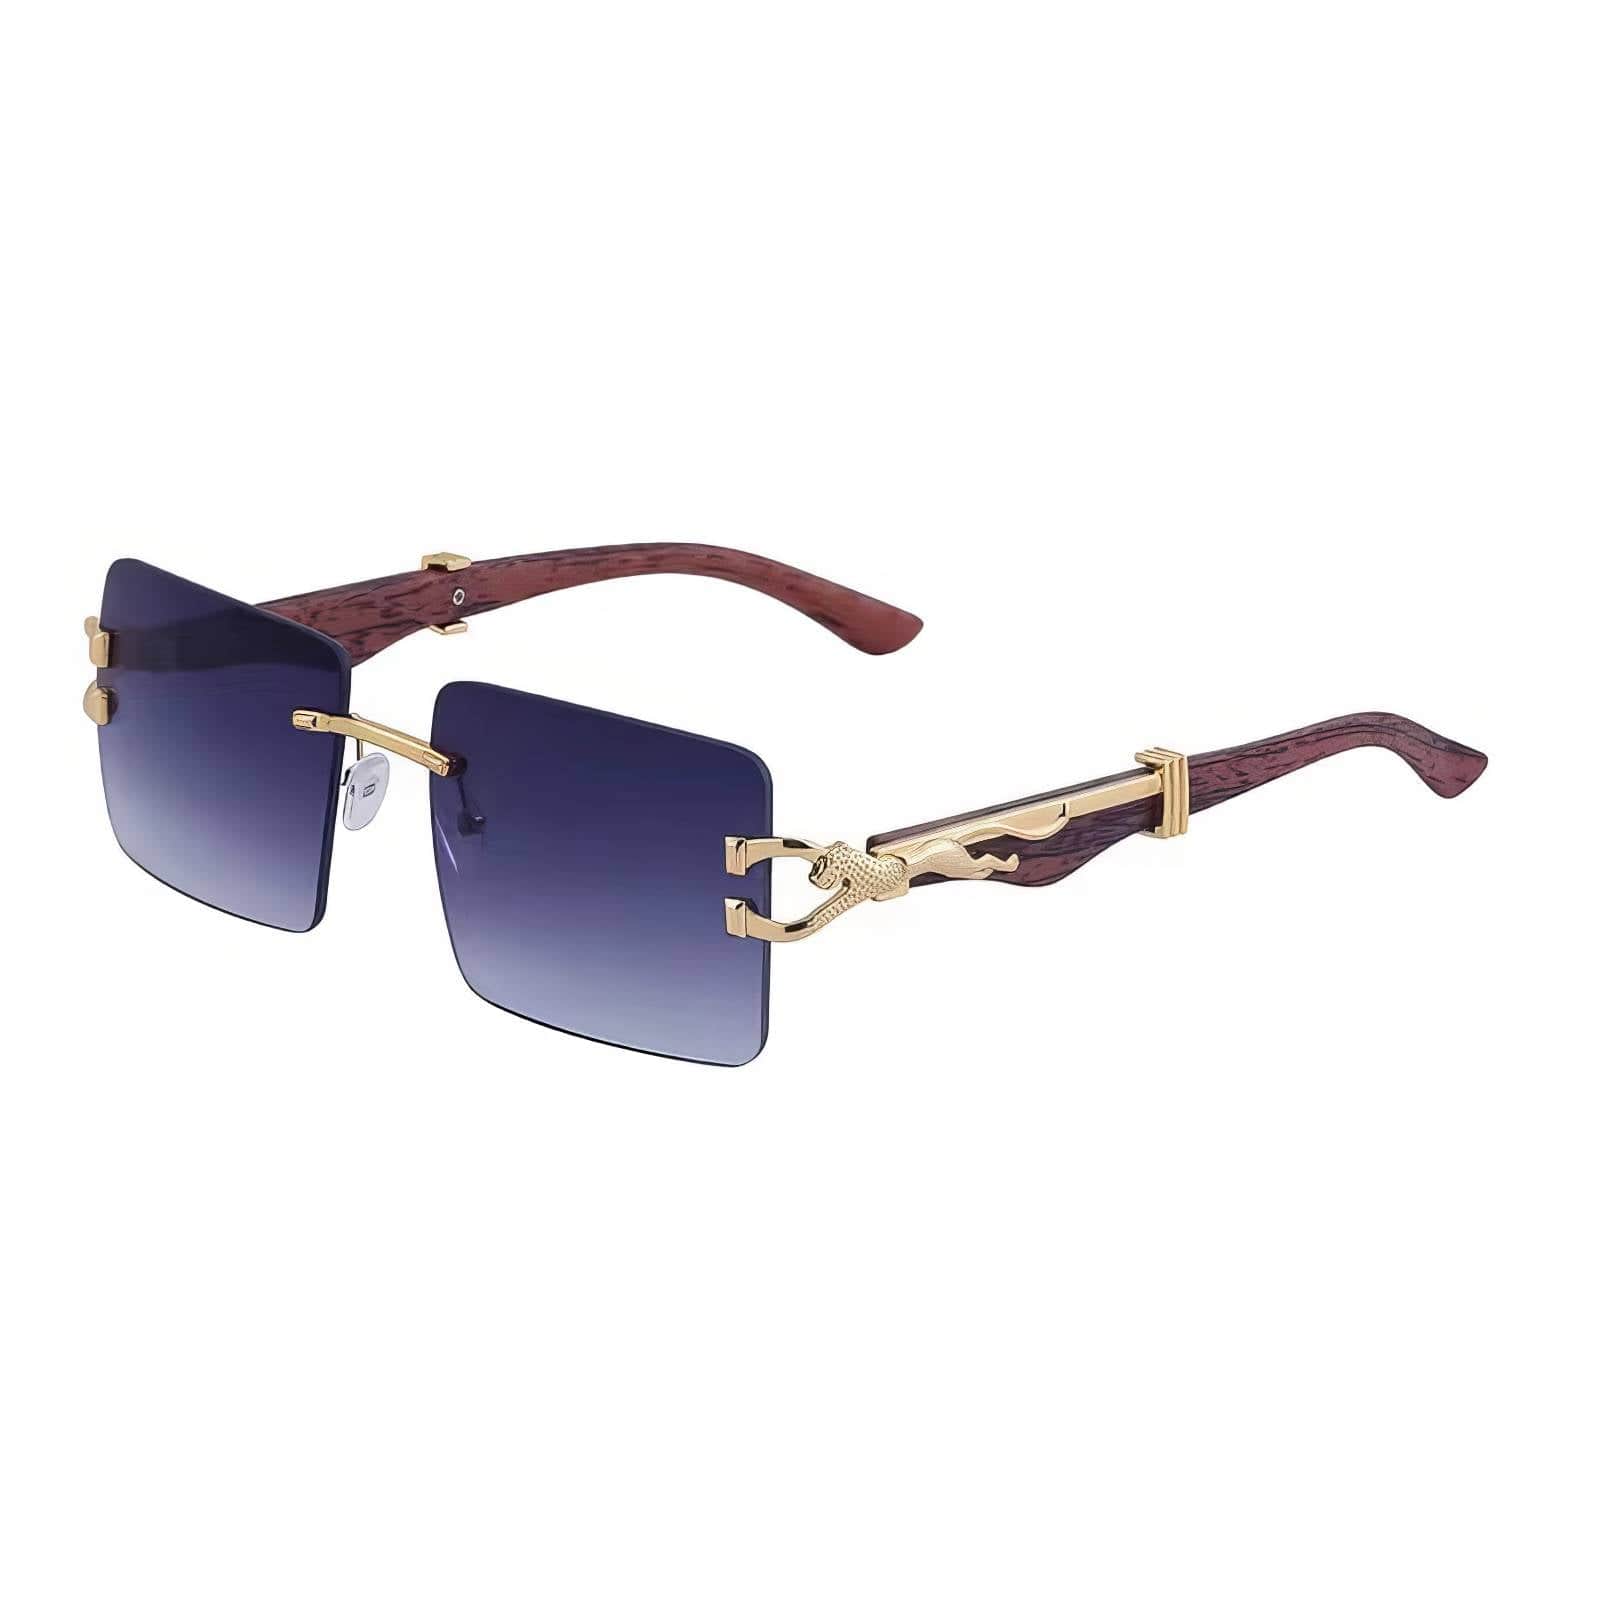 Trendy Fashion Square Wooden Frame Sunglasses LightNavy / Resin